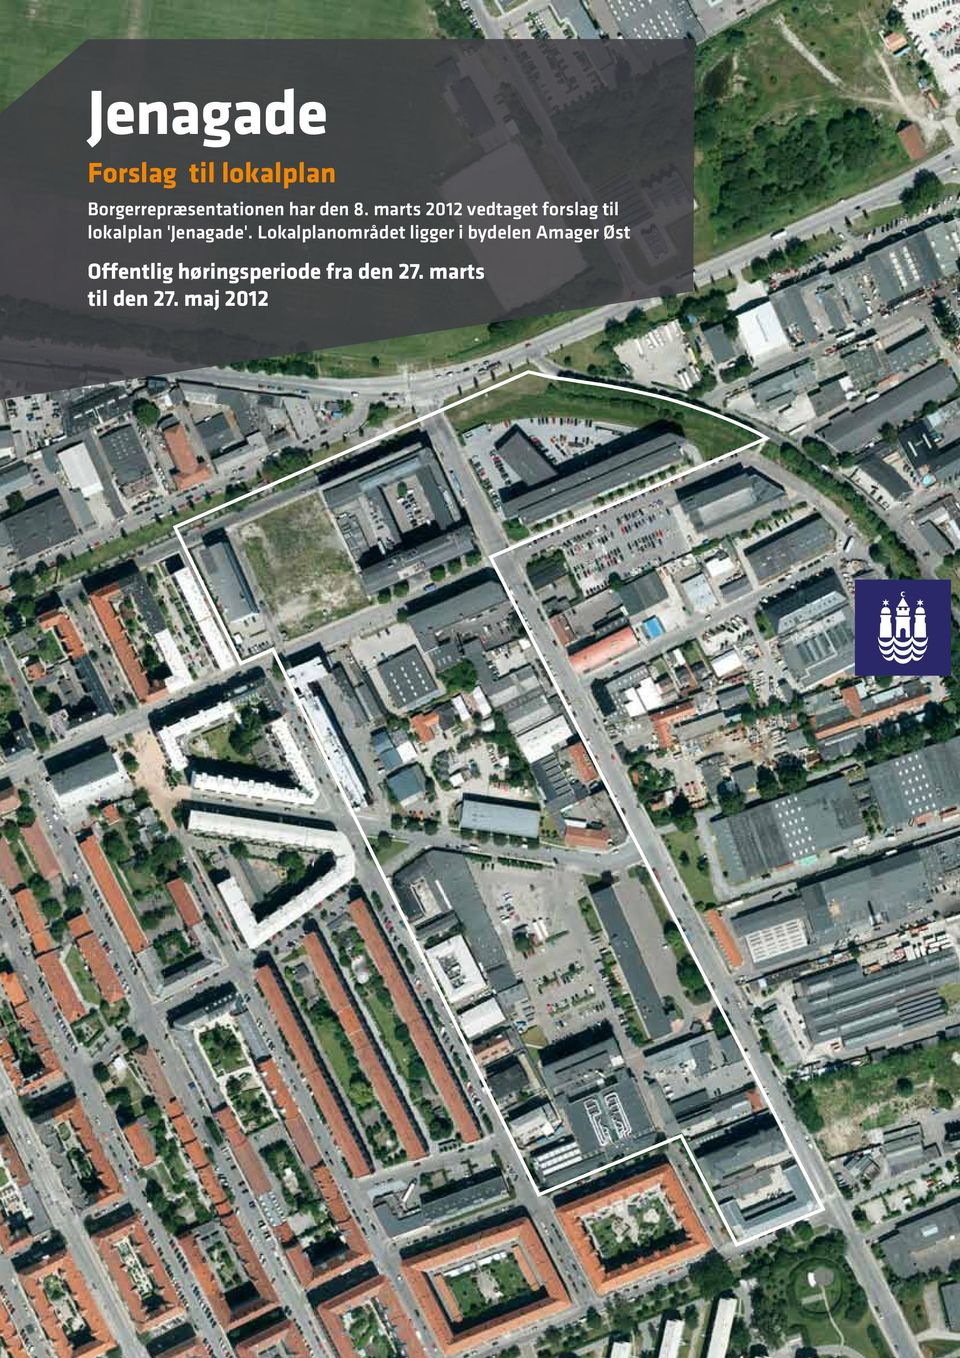 marts 2012 vedtaget forslag til lokalplan 'Jenagade'.